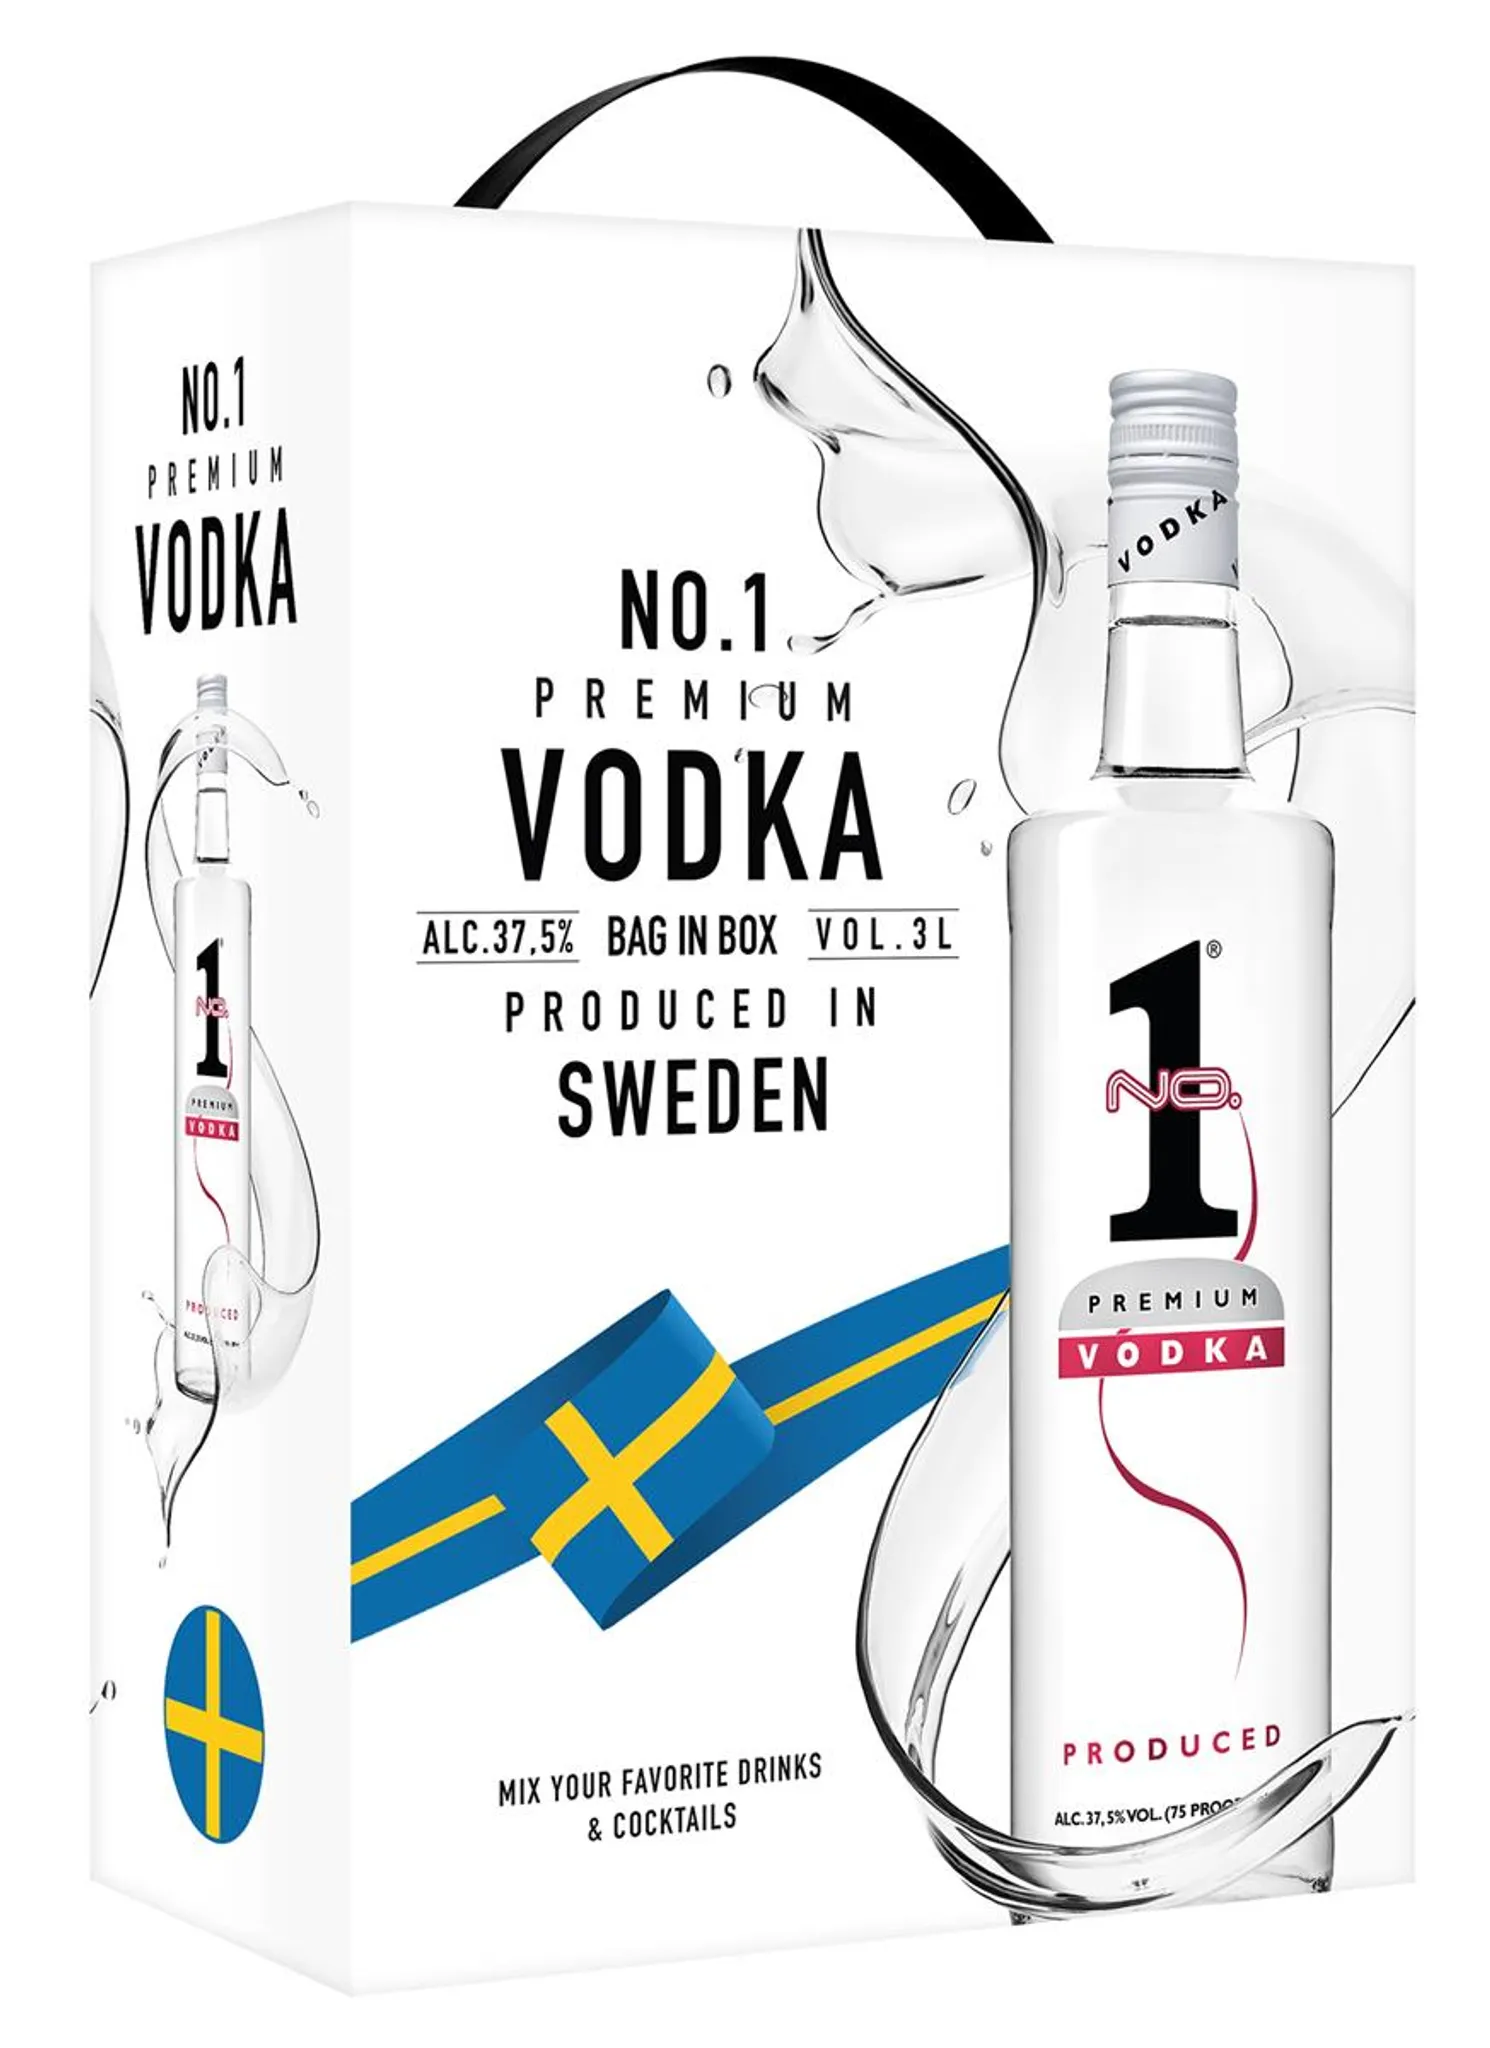 9 Mile Vodka Magnum Wodka 3l (37,5% Vol) mit